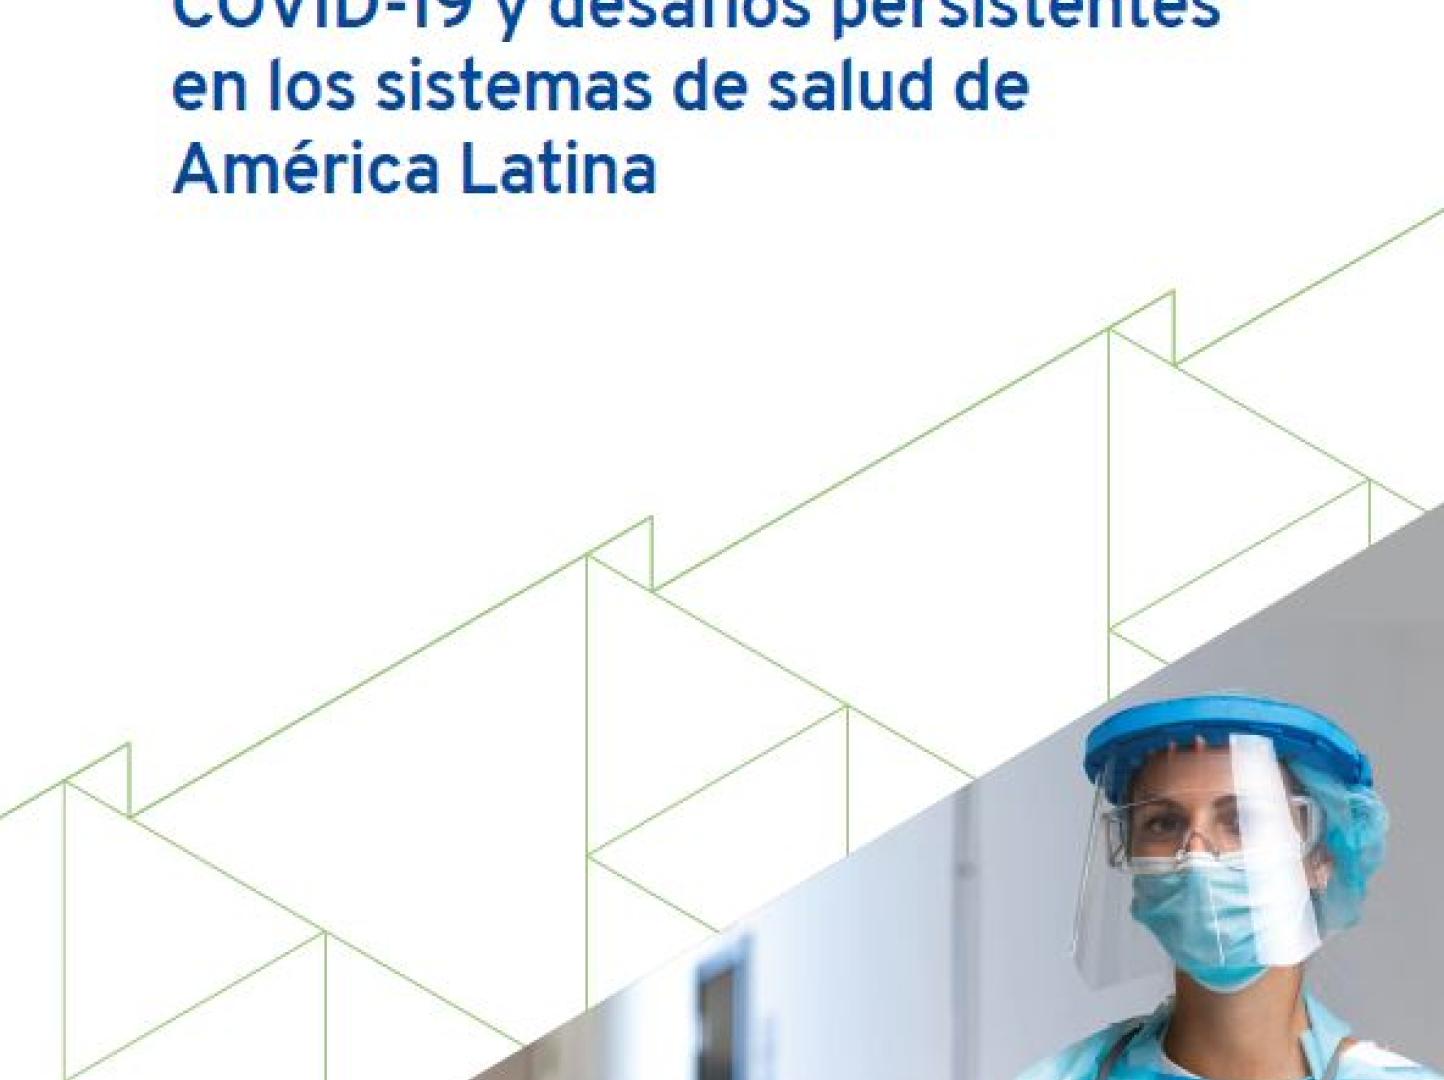 Portada del documento "Respuestas de corto plazo a la COVID-19 y desafíos persistentes en los sistemas de salud de América Latina"